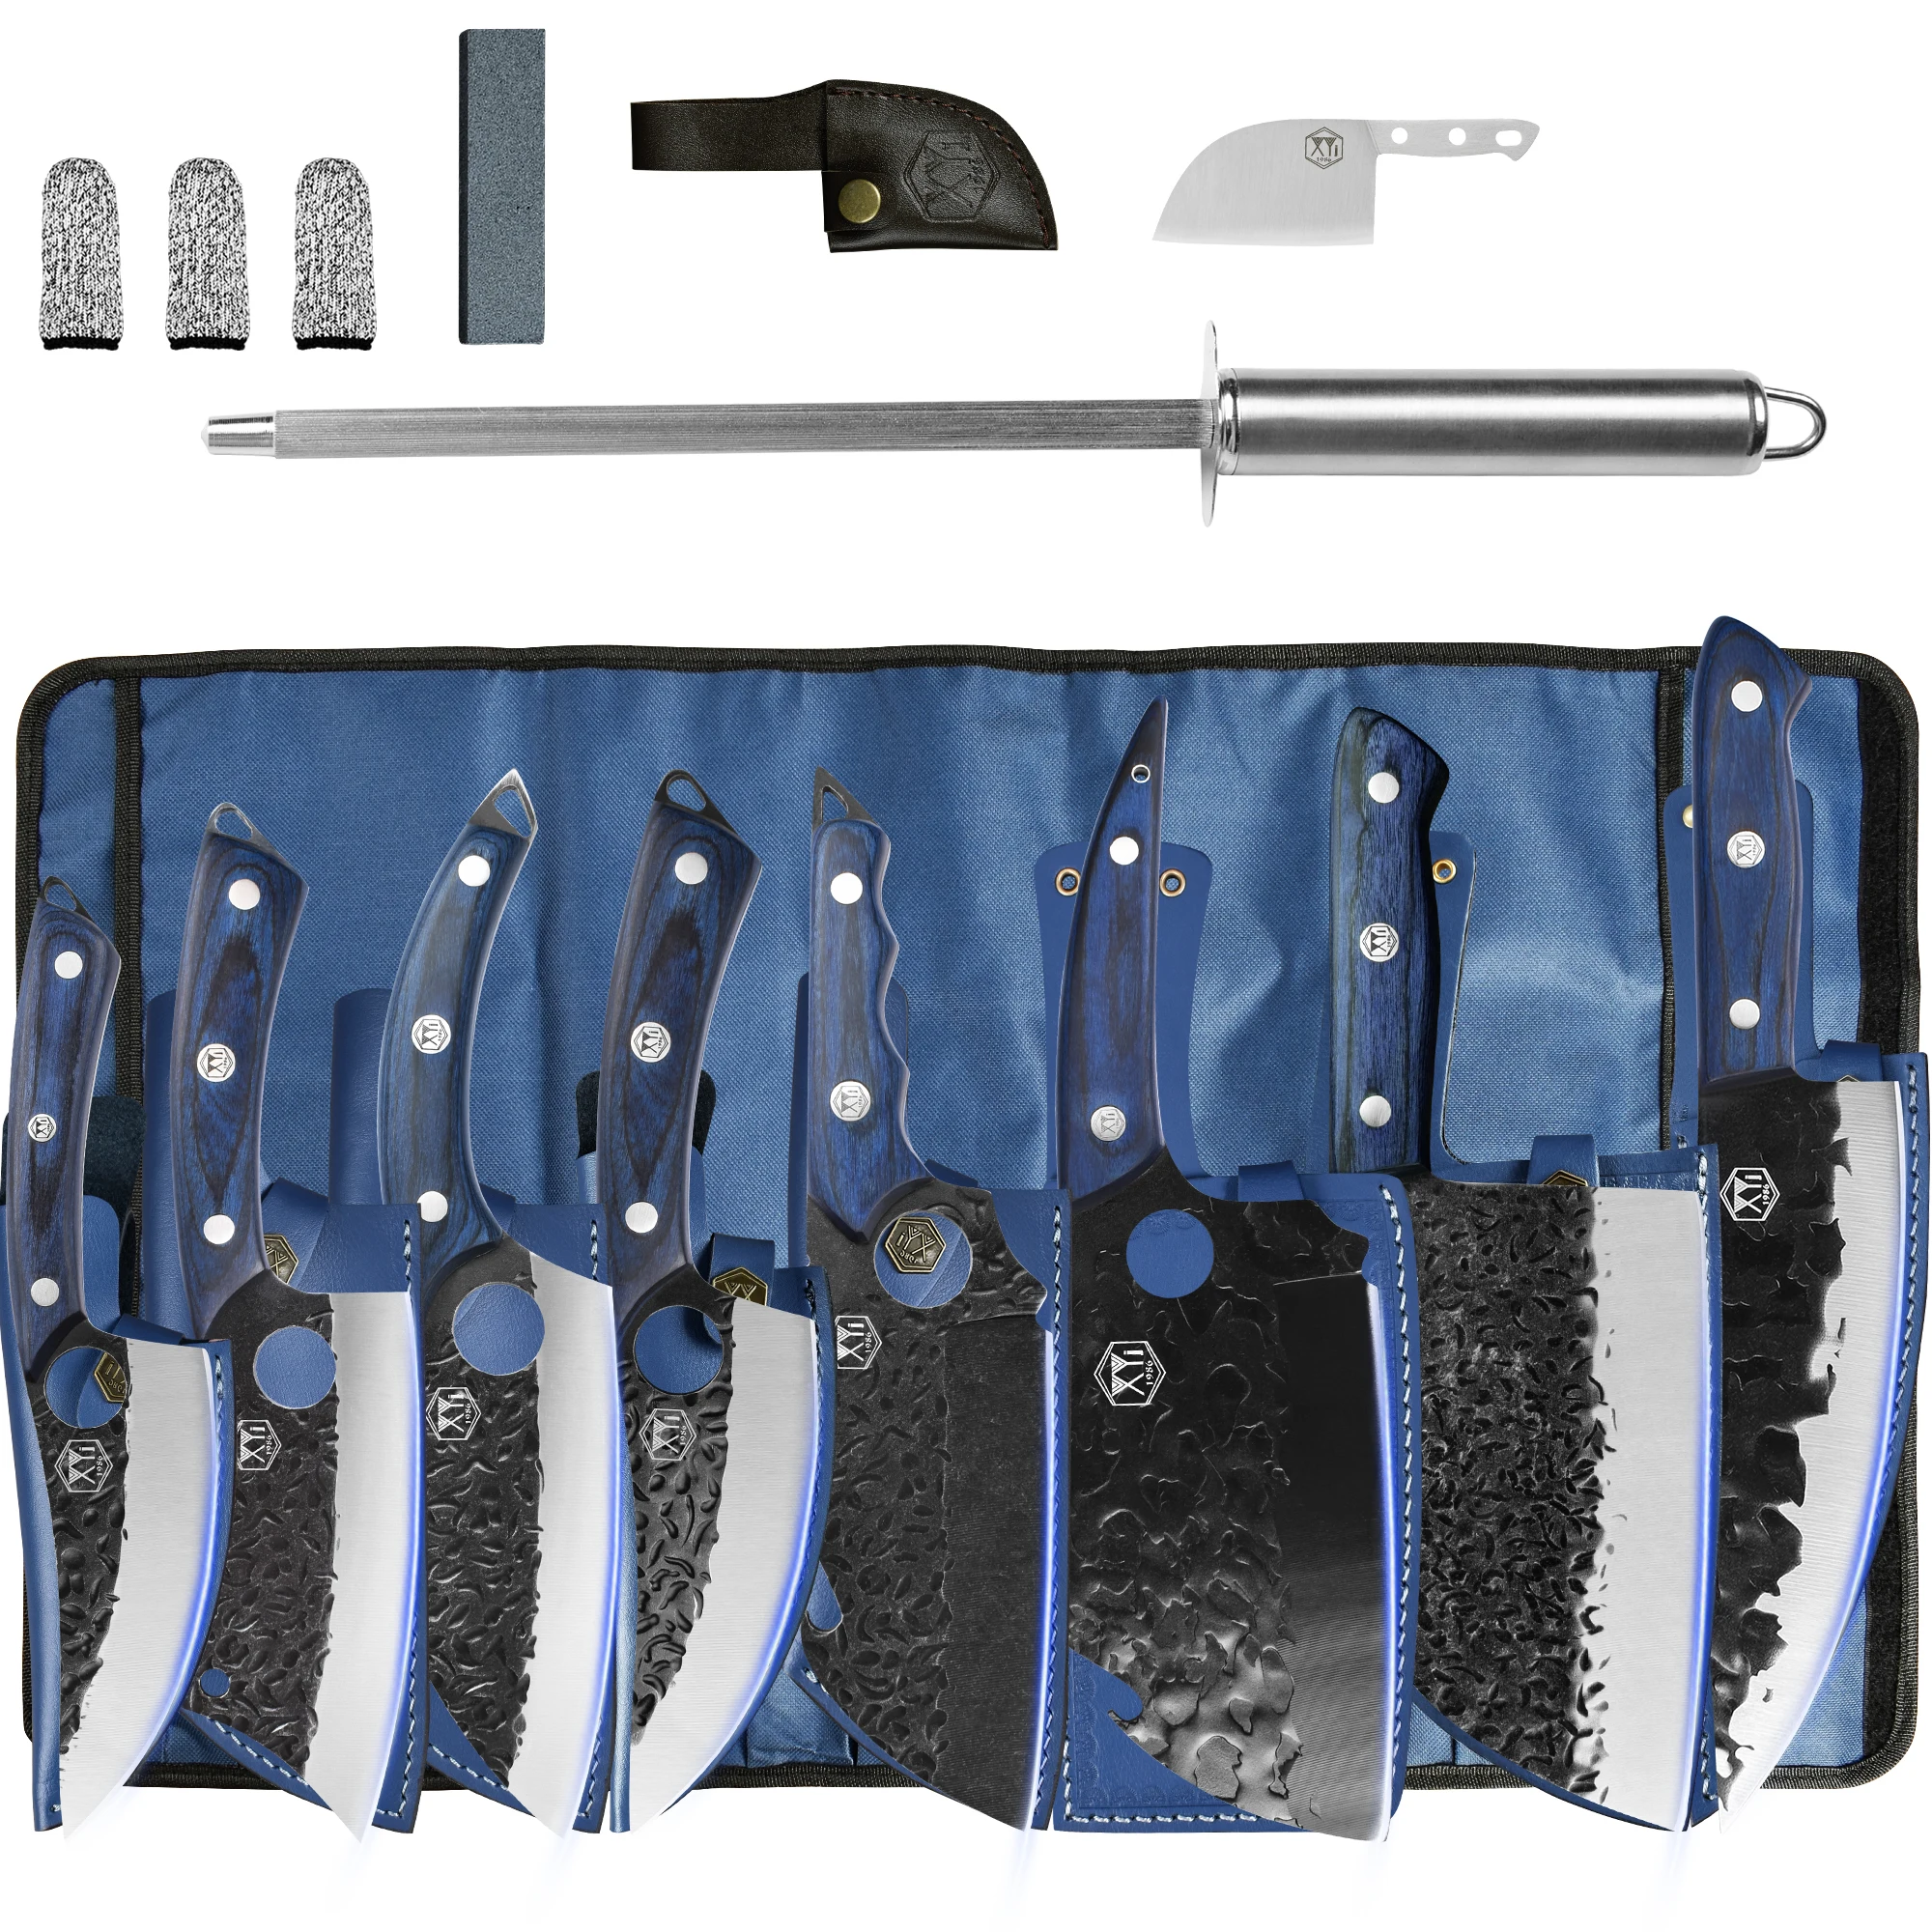 

Набор кухонных ножей XYj из 8 предметов, комбинированные кухонные инструменты шеф-повара, для приготовления пищи, ресторана, кемпинга